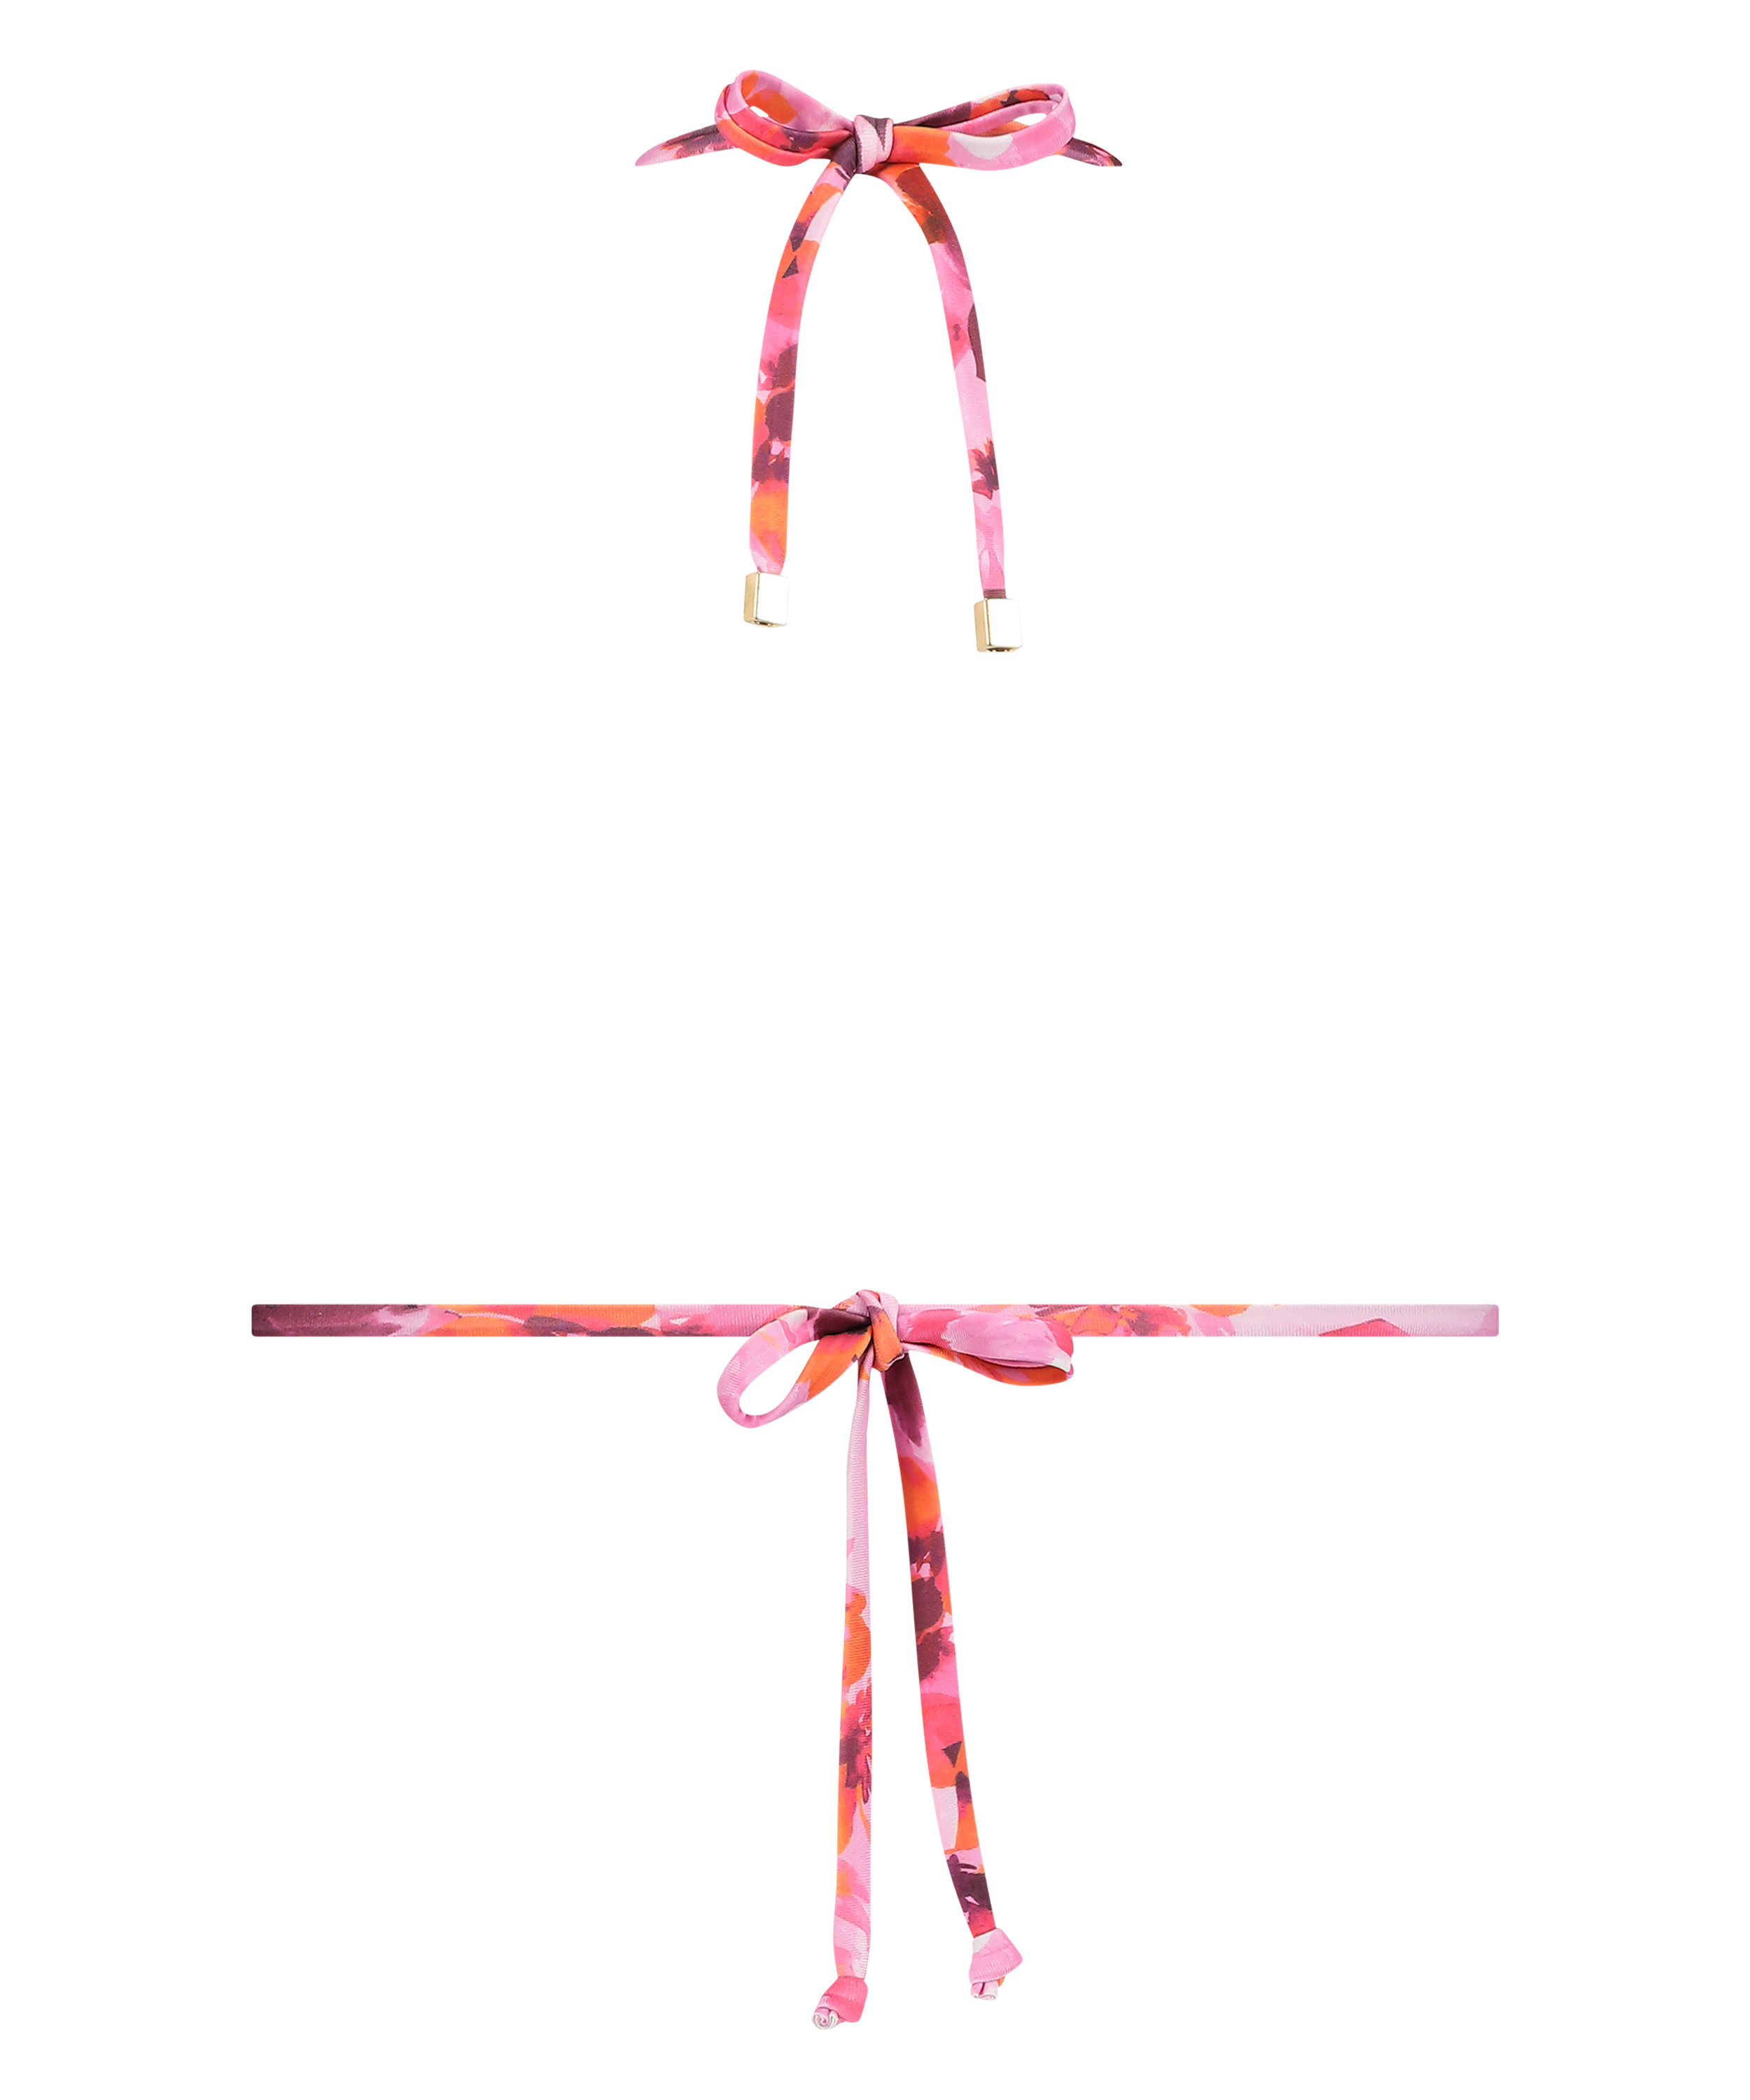 Floral Triangle Bikini Top, Pink, main